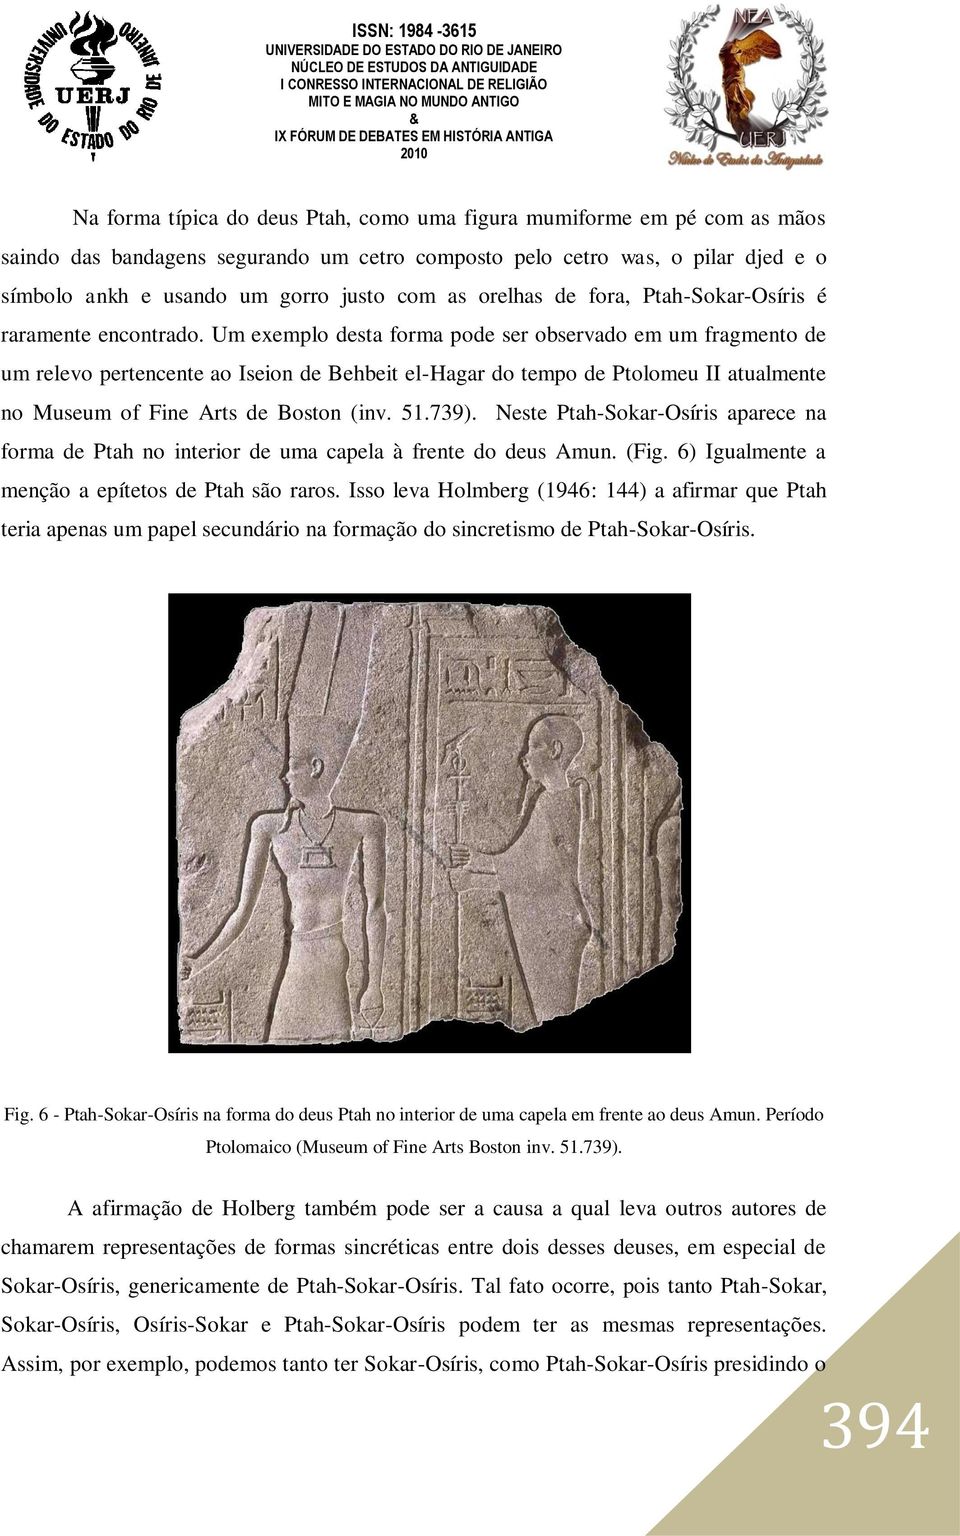 Um exemplo desta forma pode ser observado em um fragmento de um relevo pertencente ao Iseion de Behbeit el-hagar do tempo de Ptolomeu II atualmente no Museum of Fine Arts de Boston (inv. 51.739).